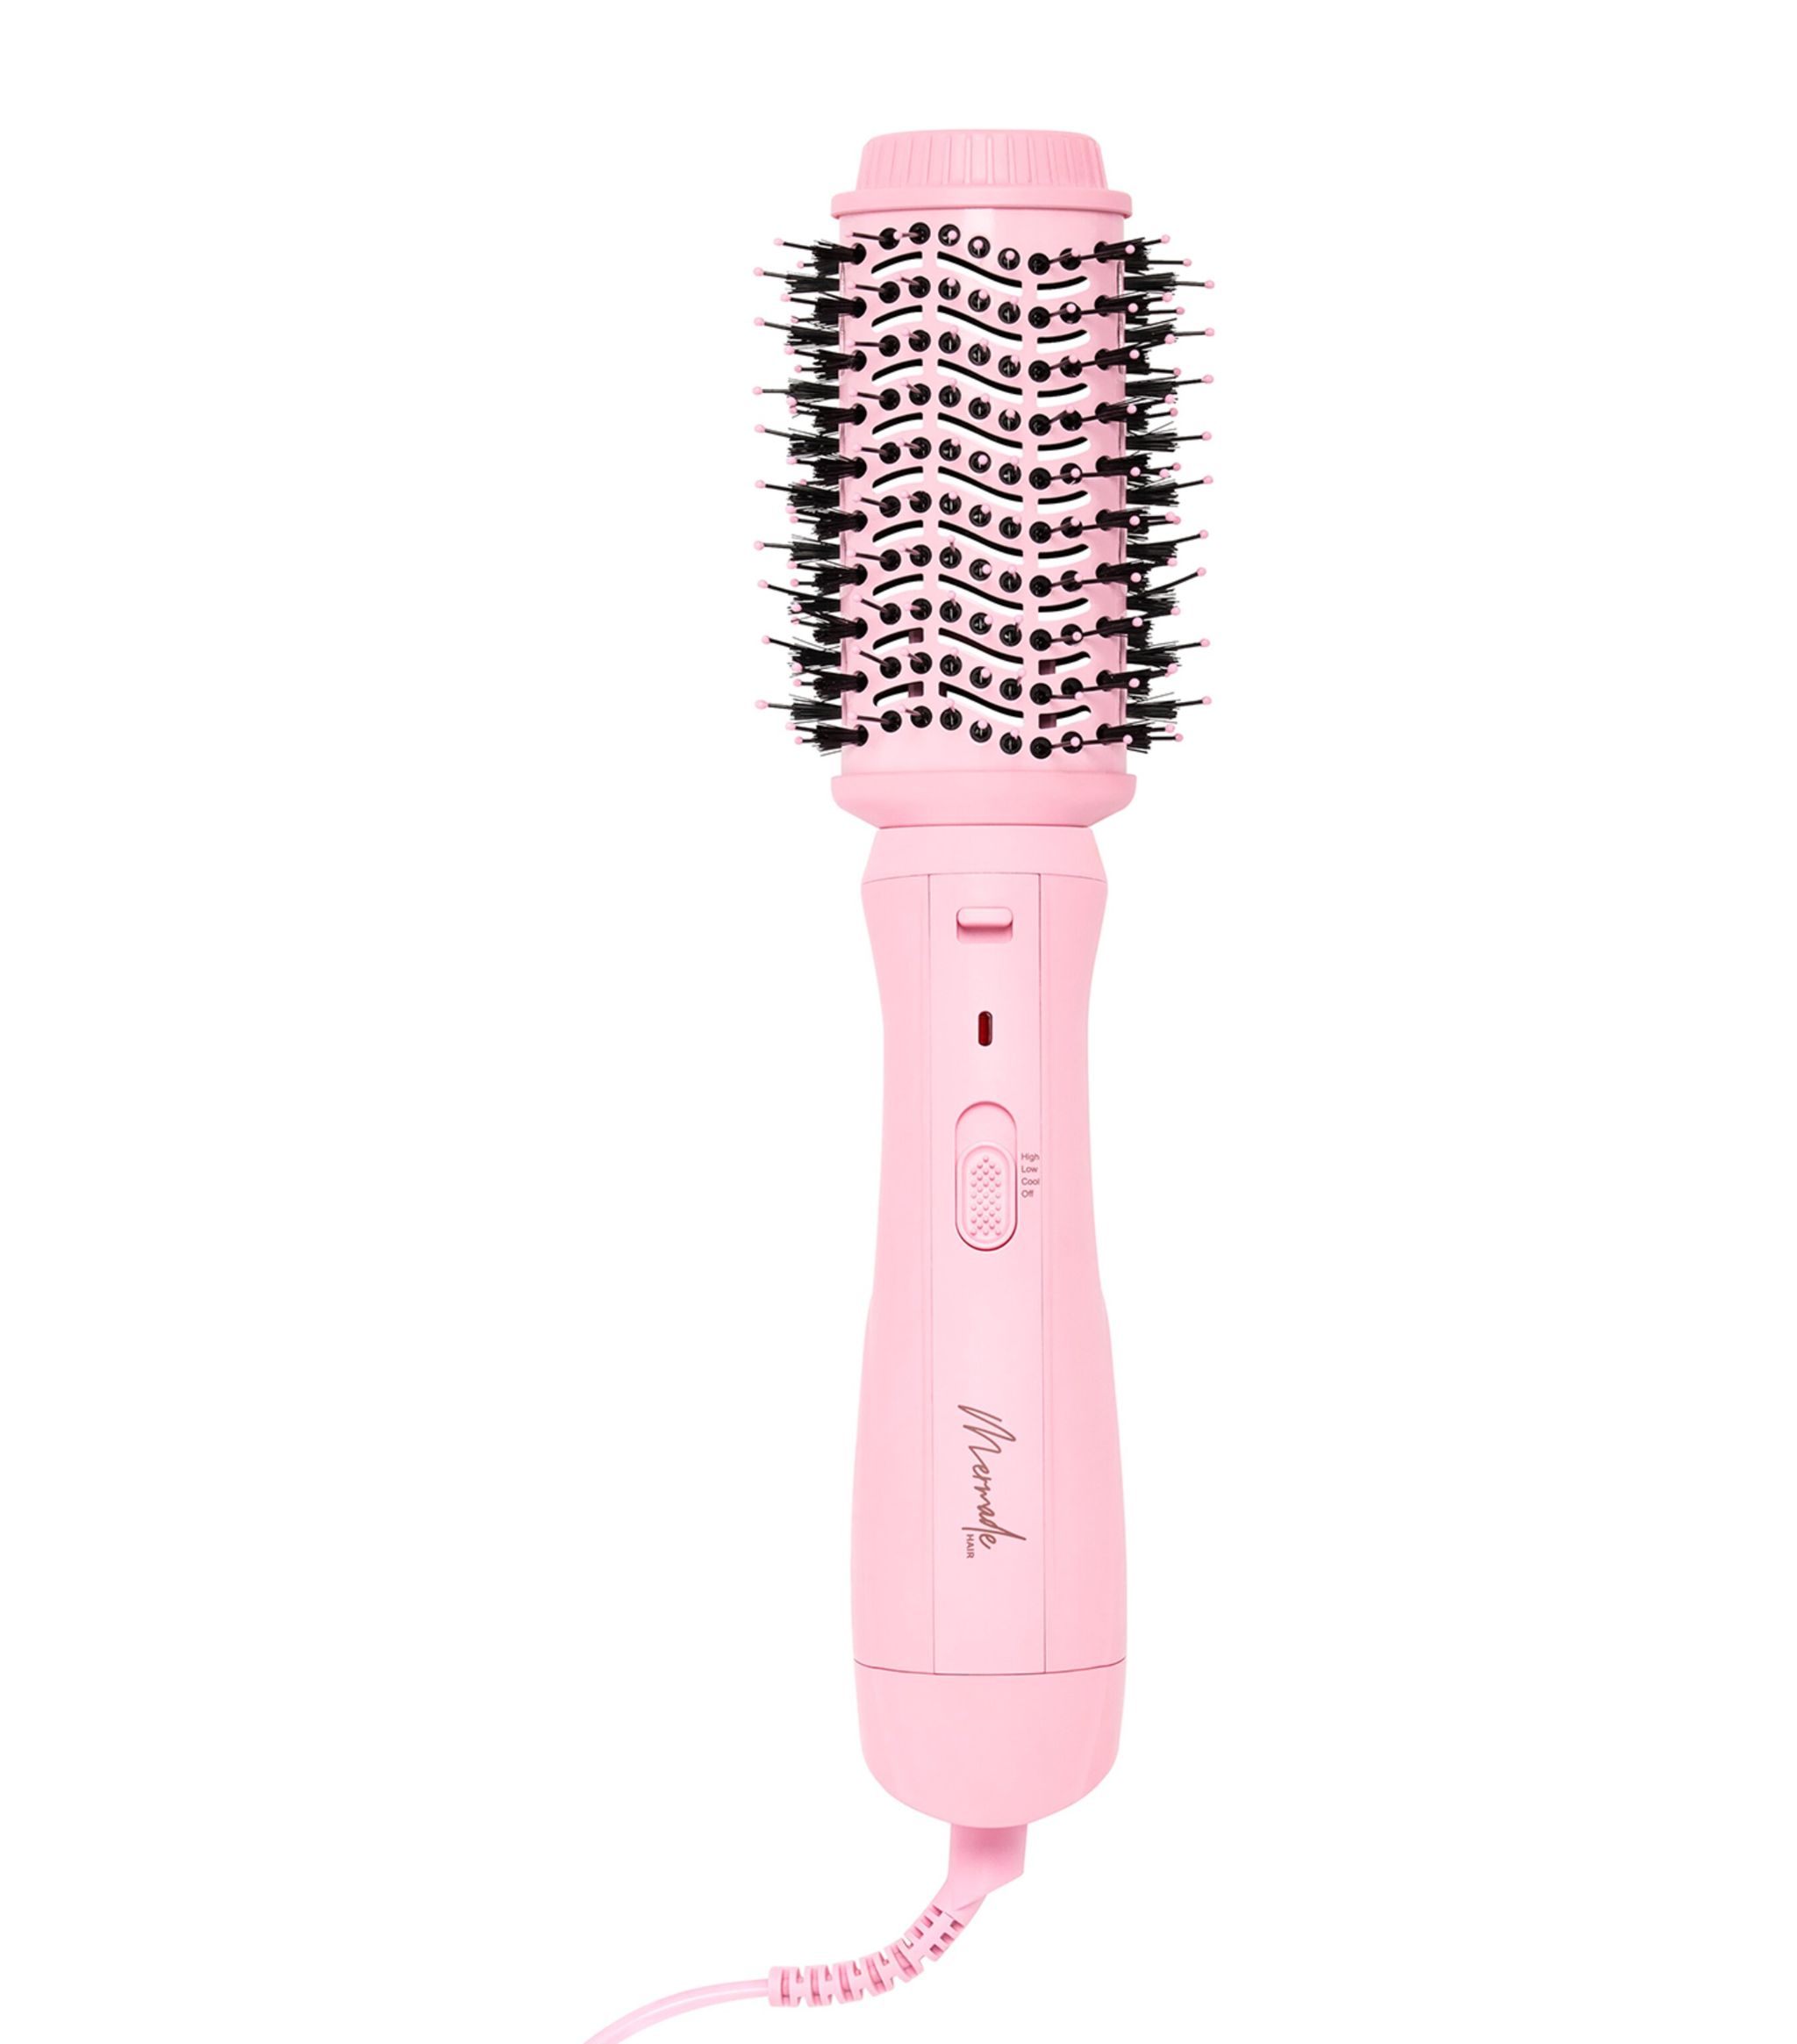 Mermade Pink Interchangeable Blow Dry Brush | Harrods Uk